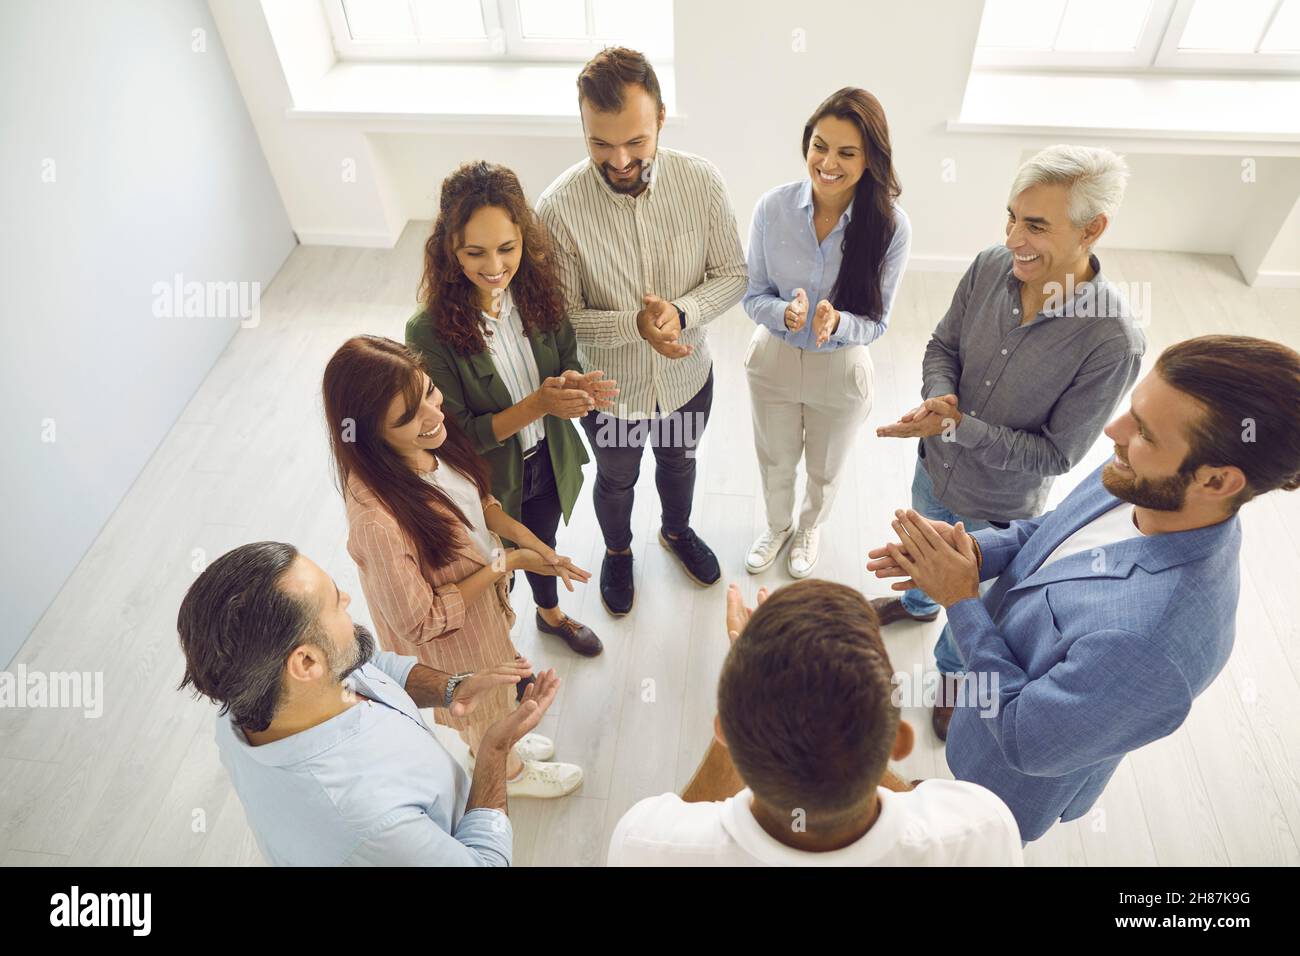 Menschen stehen im Kreis der Kontaktgruppe und applaudieren, ihre weibliche Führungskraft oder Kollegin zu unterstützen. Stockfoto